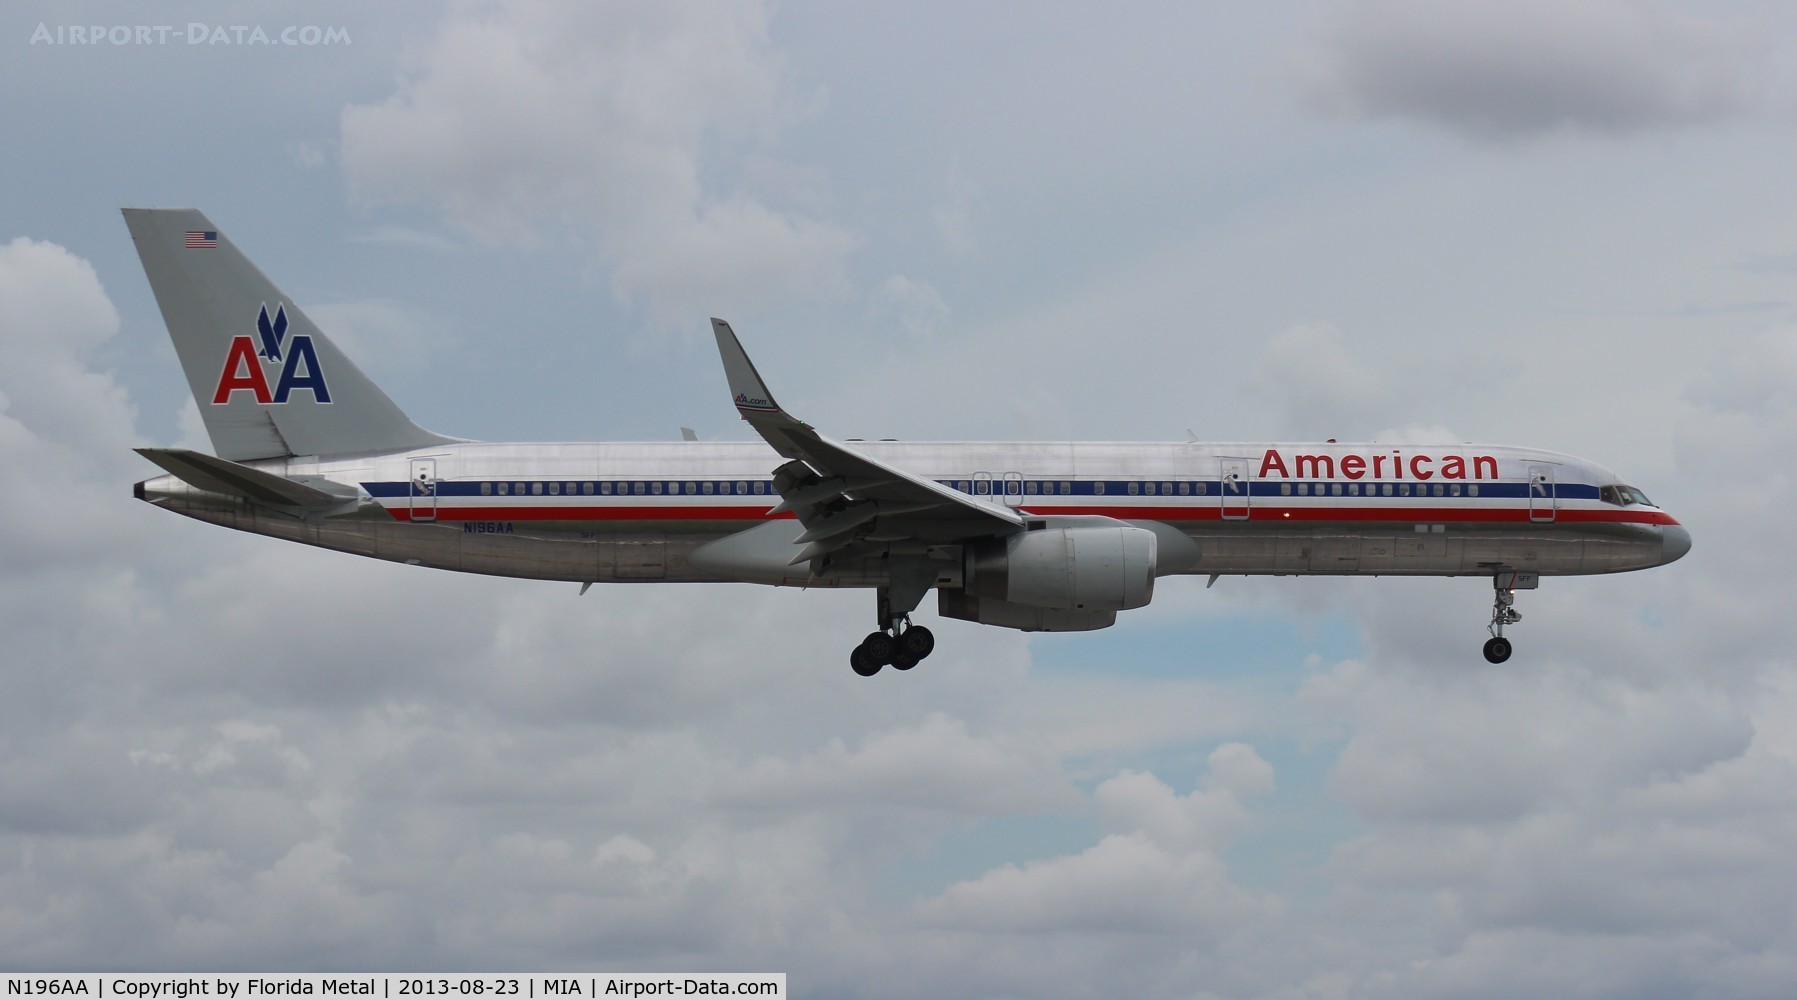 N196AA, 2001 Boeing 757-223 C/N 32390, American 757-200